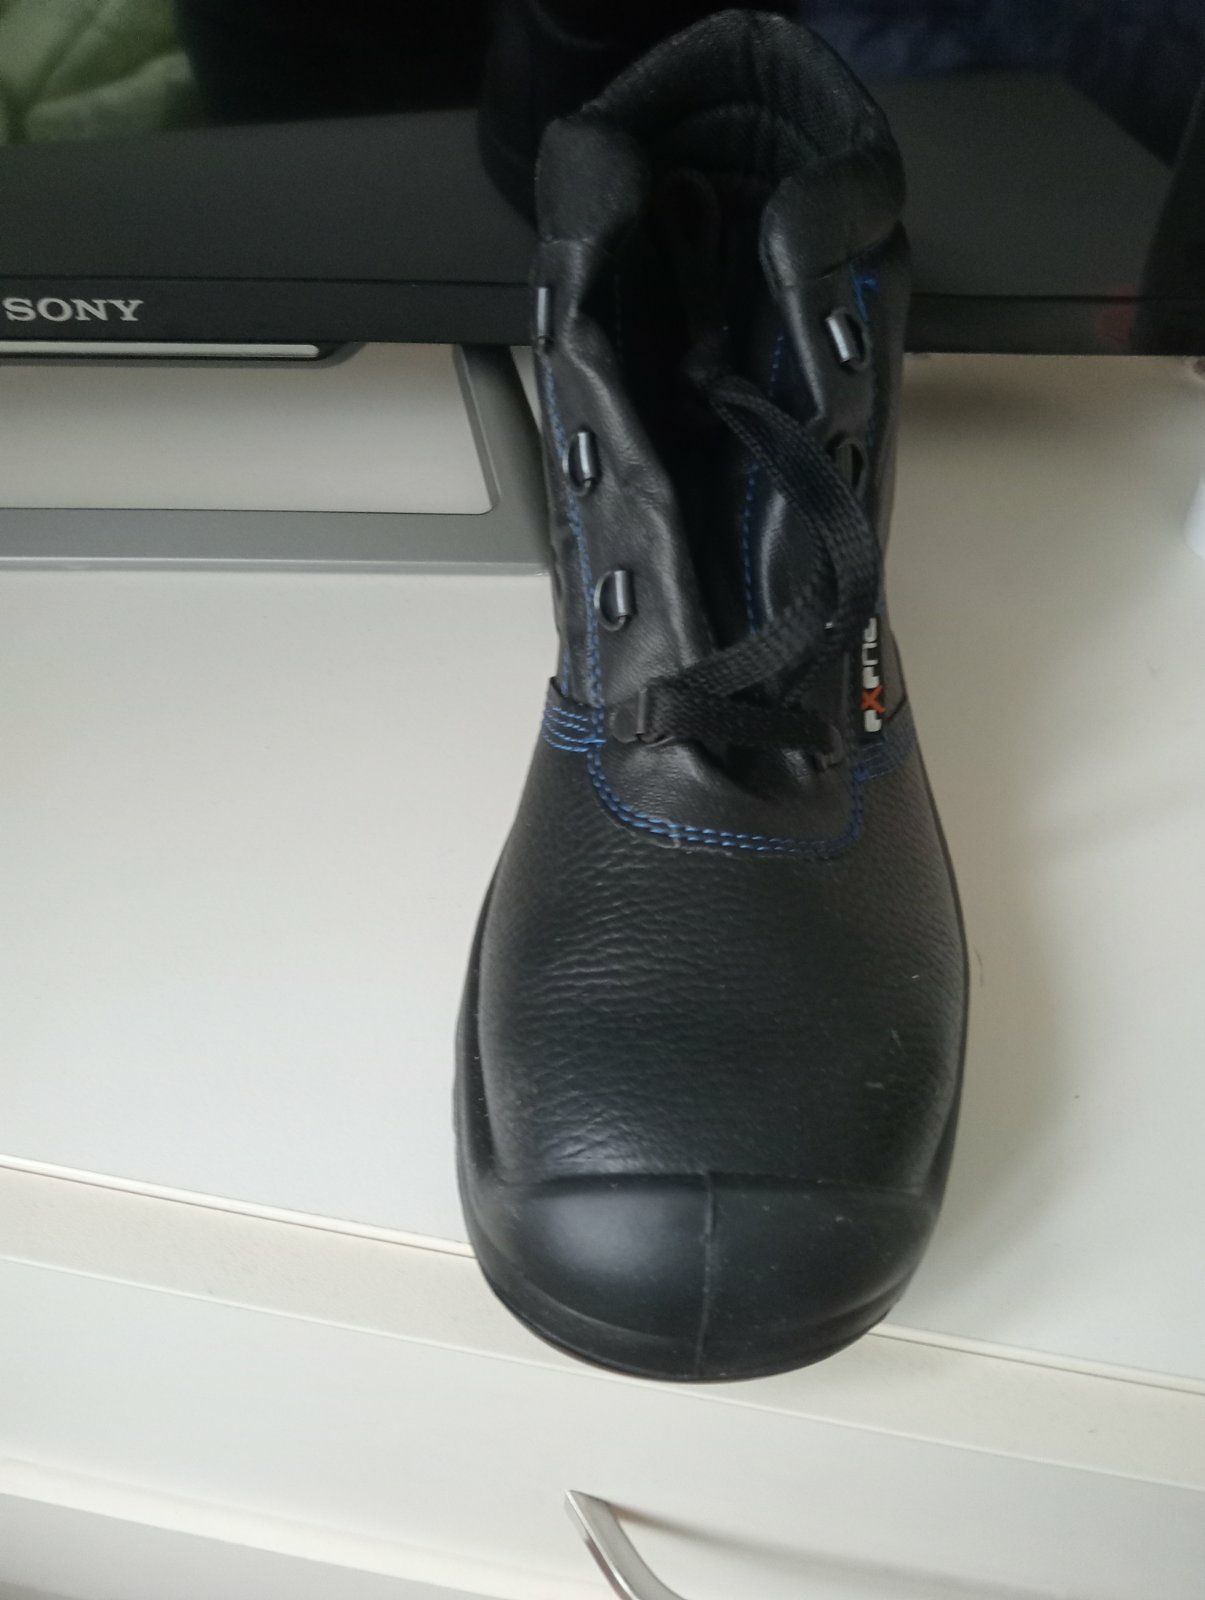 Нові робочі чоботи - спецвзуття